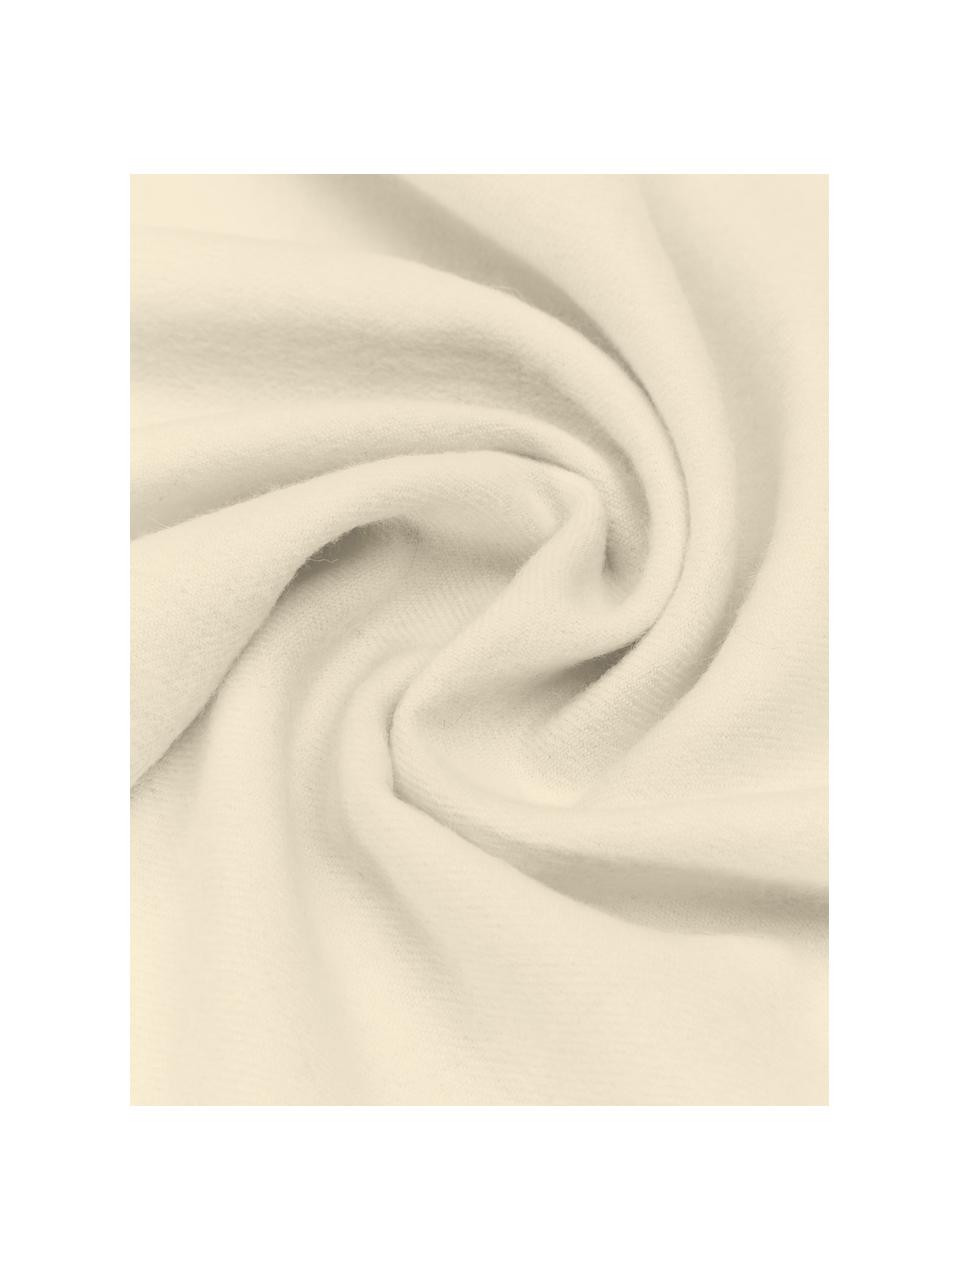 Plaid Luxury aus Babyalpaka-Wolle, 100 % Babyalpaka-Wolle

Diese Decke ist aus wunderbar weicher, hochwertiger Babyalpaka-Wolle gewebt. Sie schmeichelt der Haut und spendet wohlige Wärme, ist strapazierfähig aber dennoch leicht und besitzt hervorragende temperaturregulierende Eigenschaften. Dadurch ist diese Decke der perfekte Begleiter für kühle Sommerabende ebenso wie kalte Wintertage., Off White, B 130 x L 200 cm